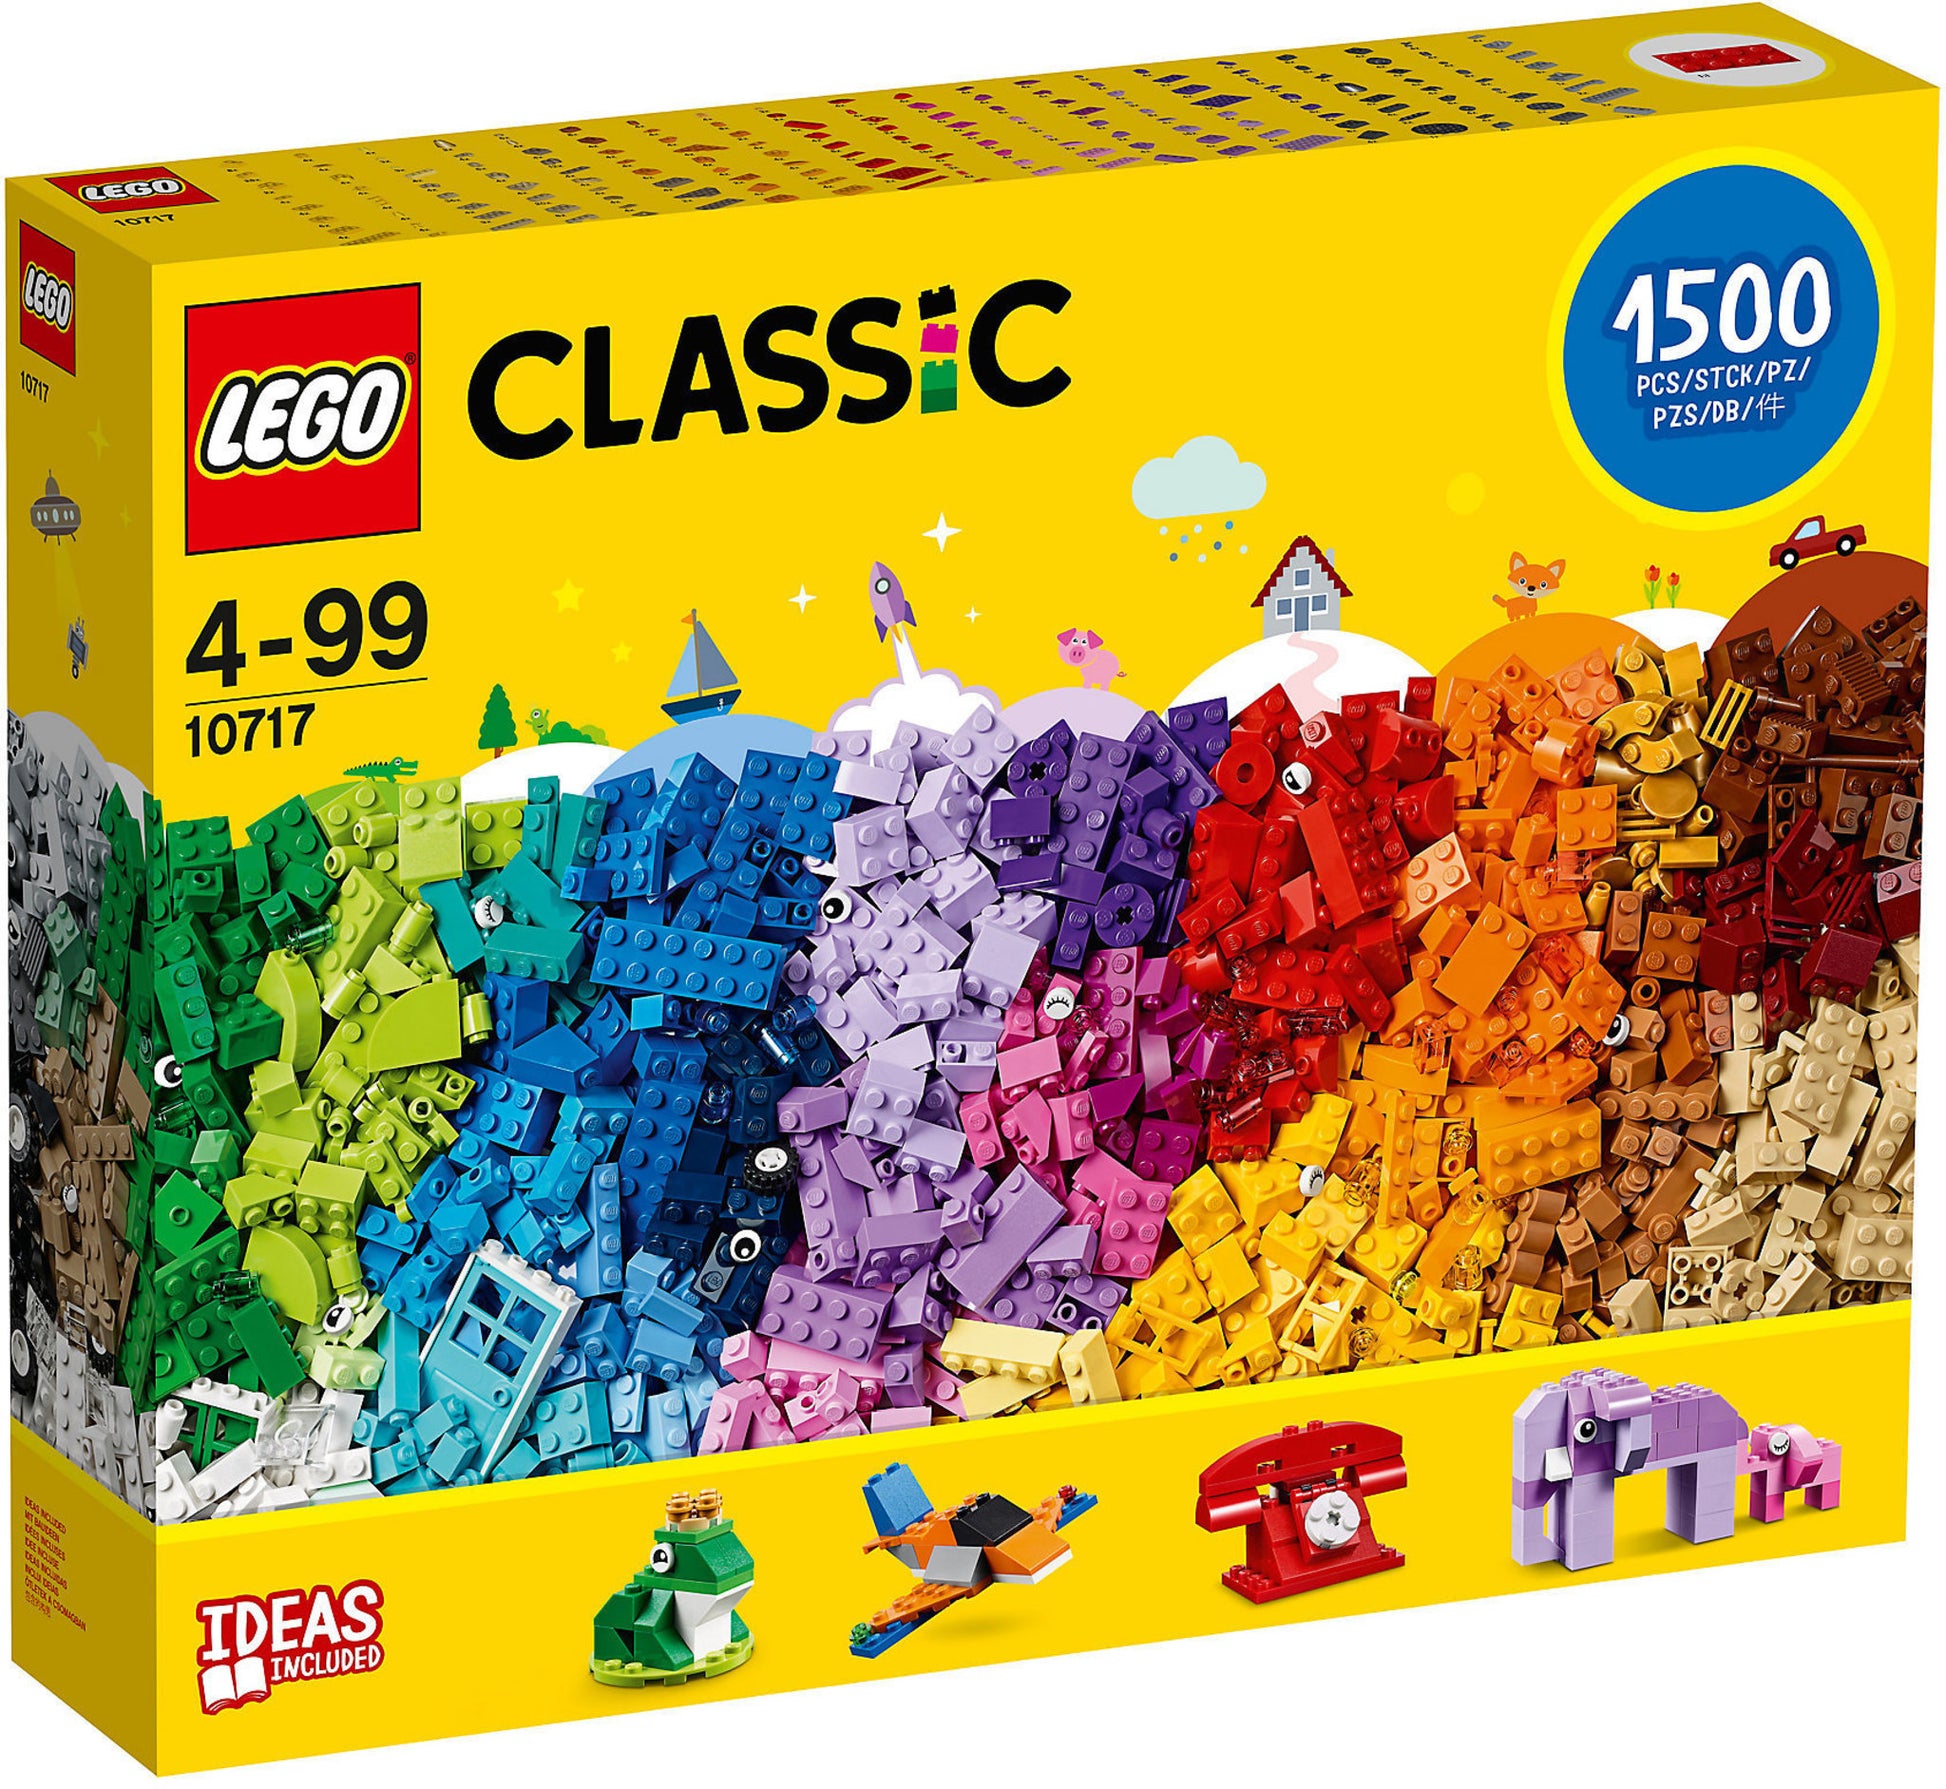 Mattoncini Compatibili LEGO: la classifica dei migliori set